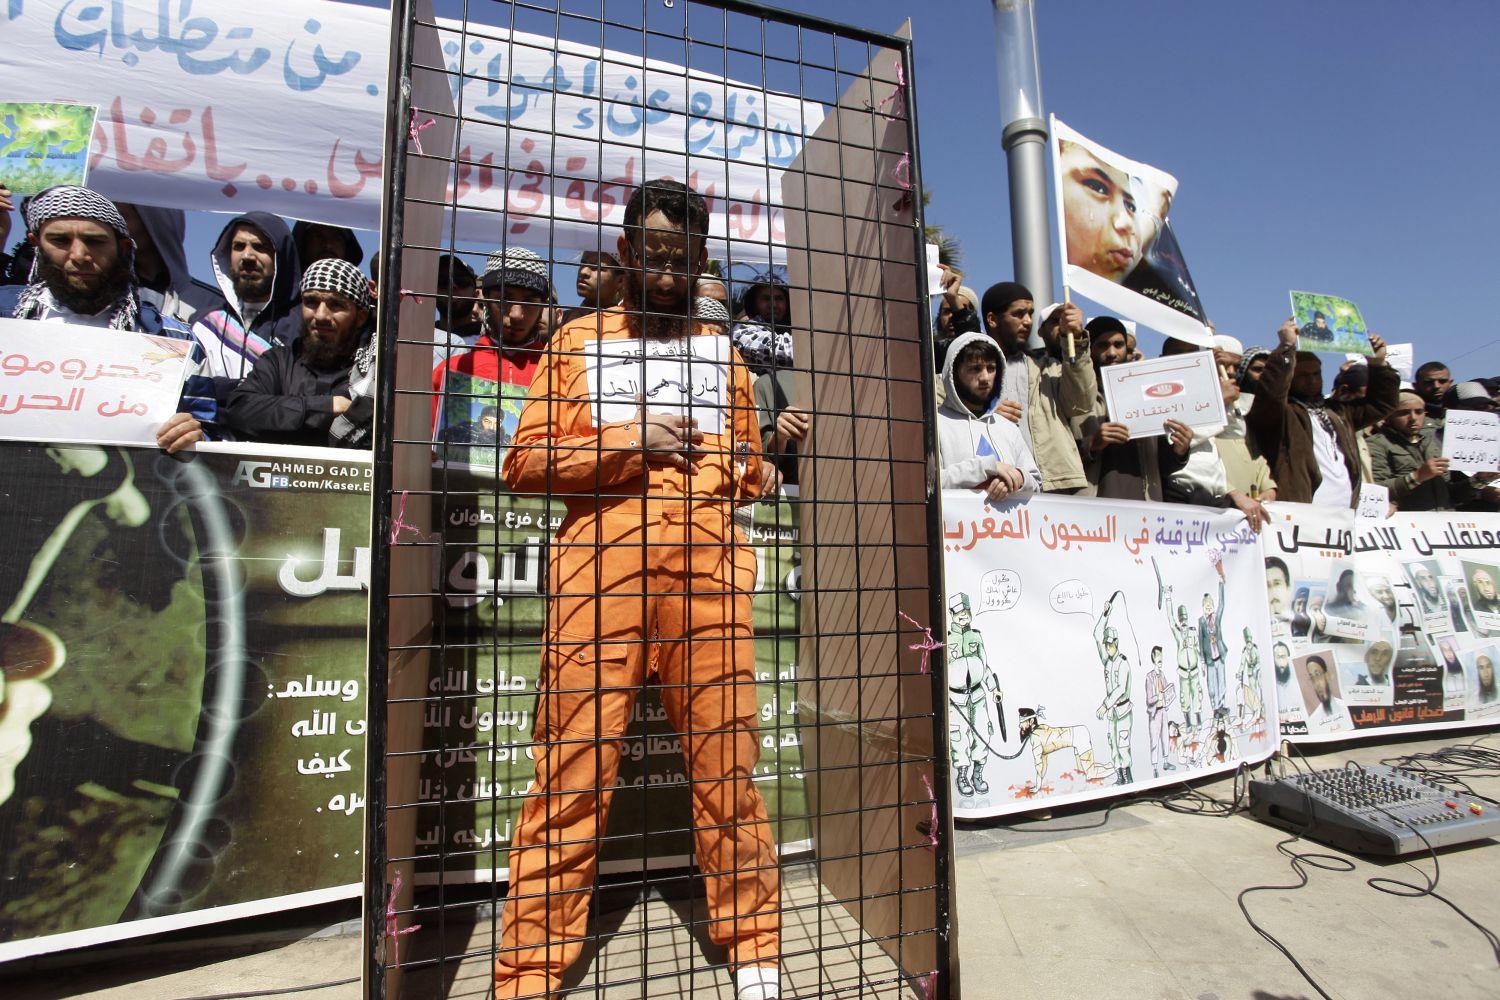 A guántanámói fogolytábor egyik rabja májusban egy rabati tüntetésen. Az Egyesült Államok fél a nemzetközi felhördüléstől